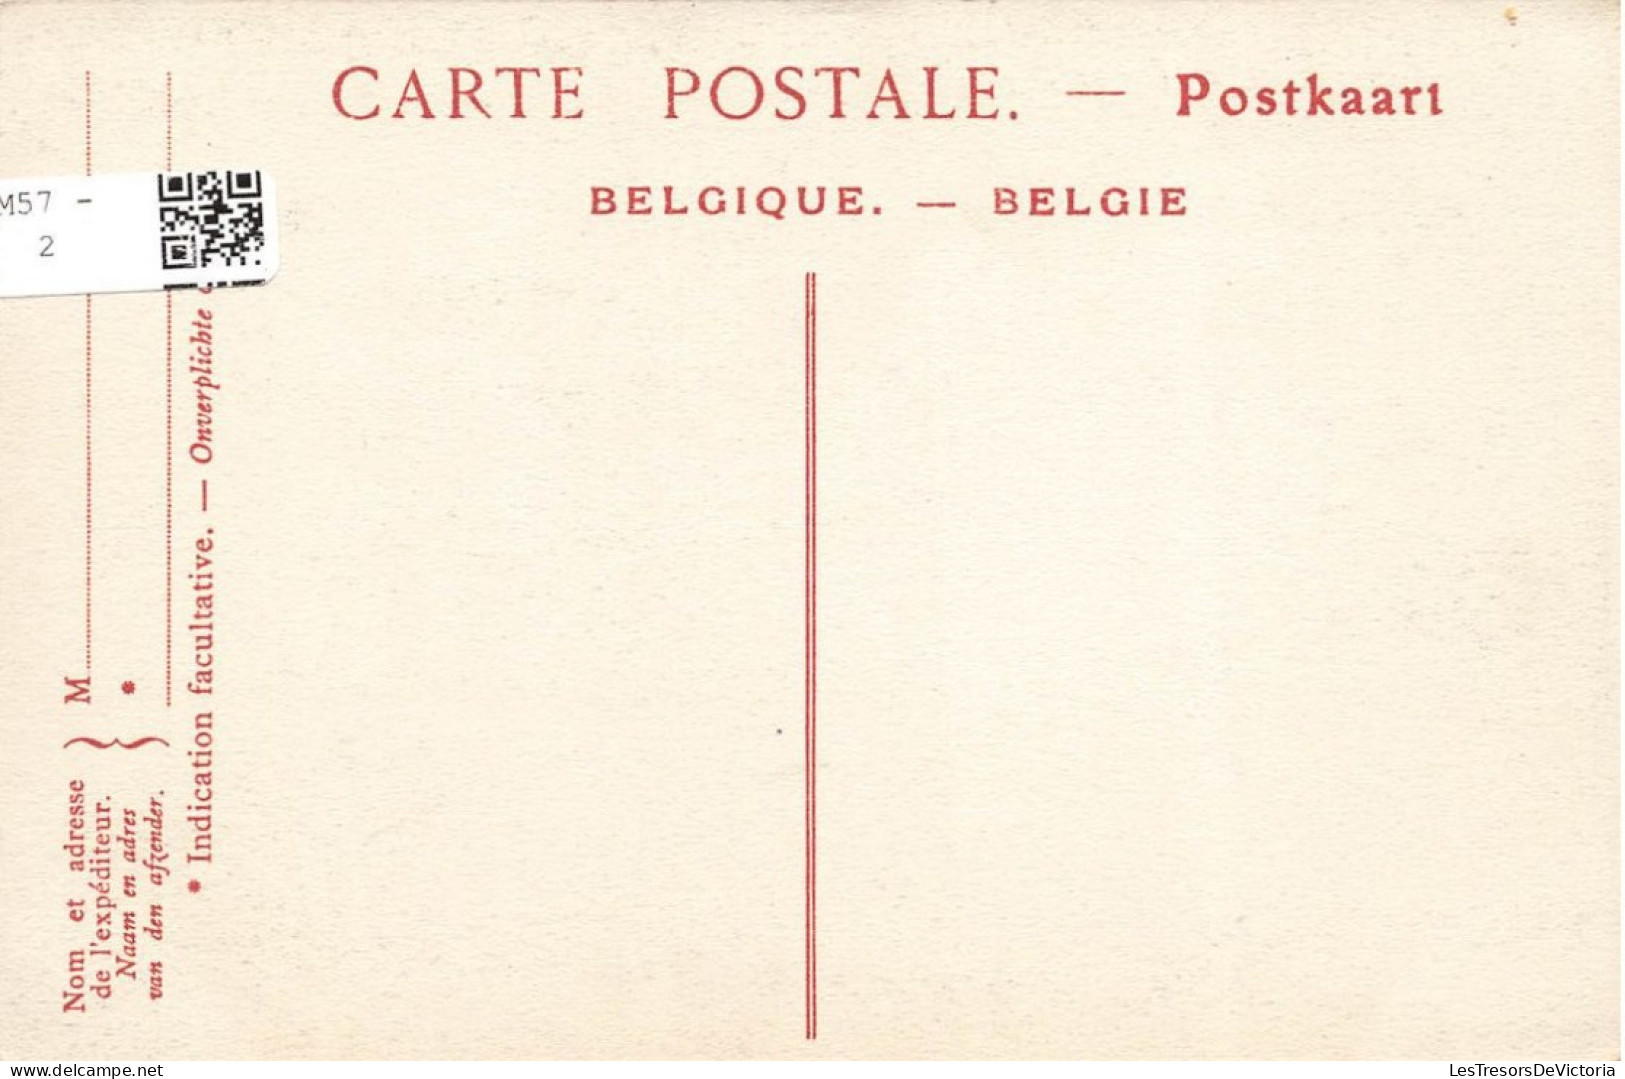 BELGIQUE - Namur - Vue Sur La Passerelle Et La Pointe Grognon - Carte Postale Ancienne - Namur